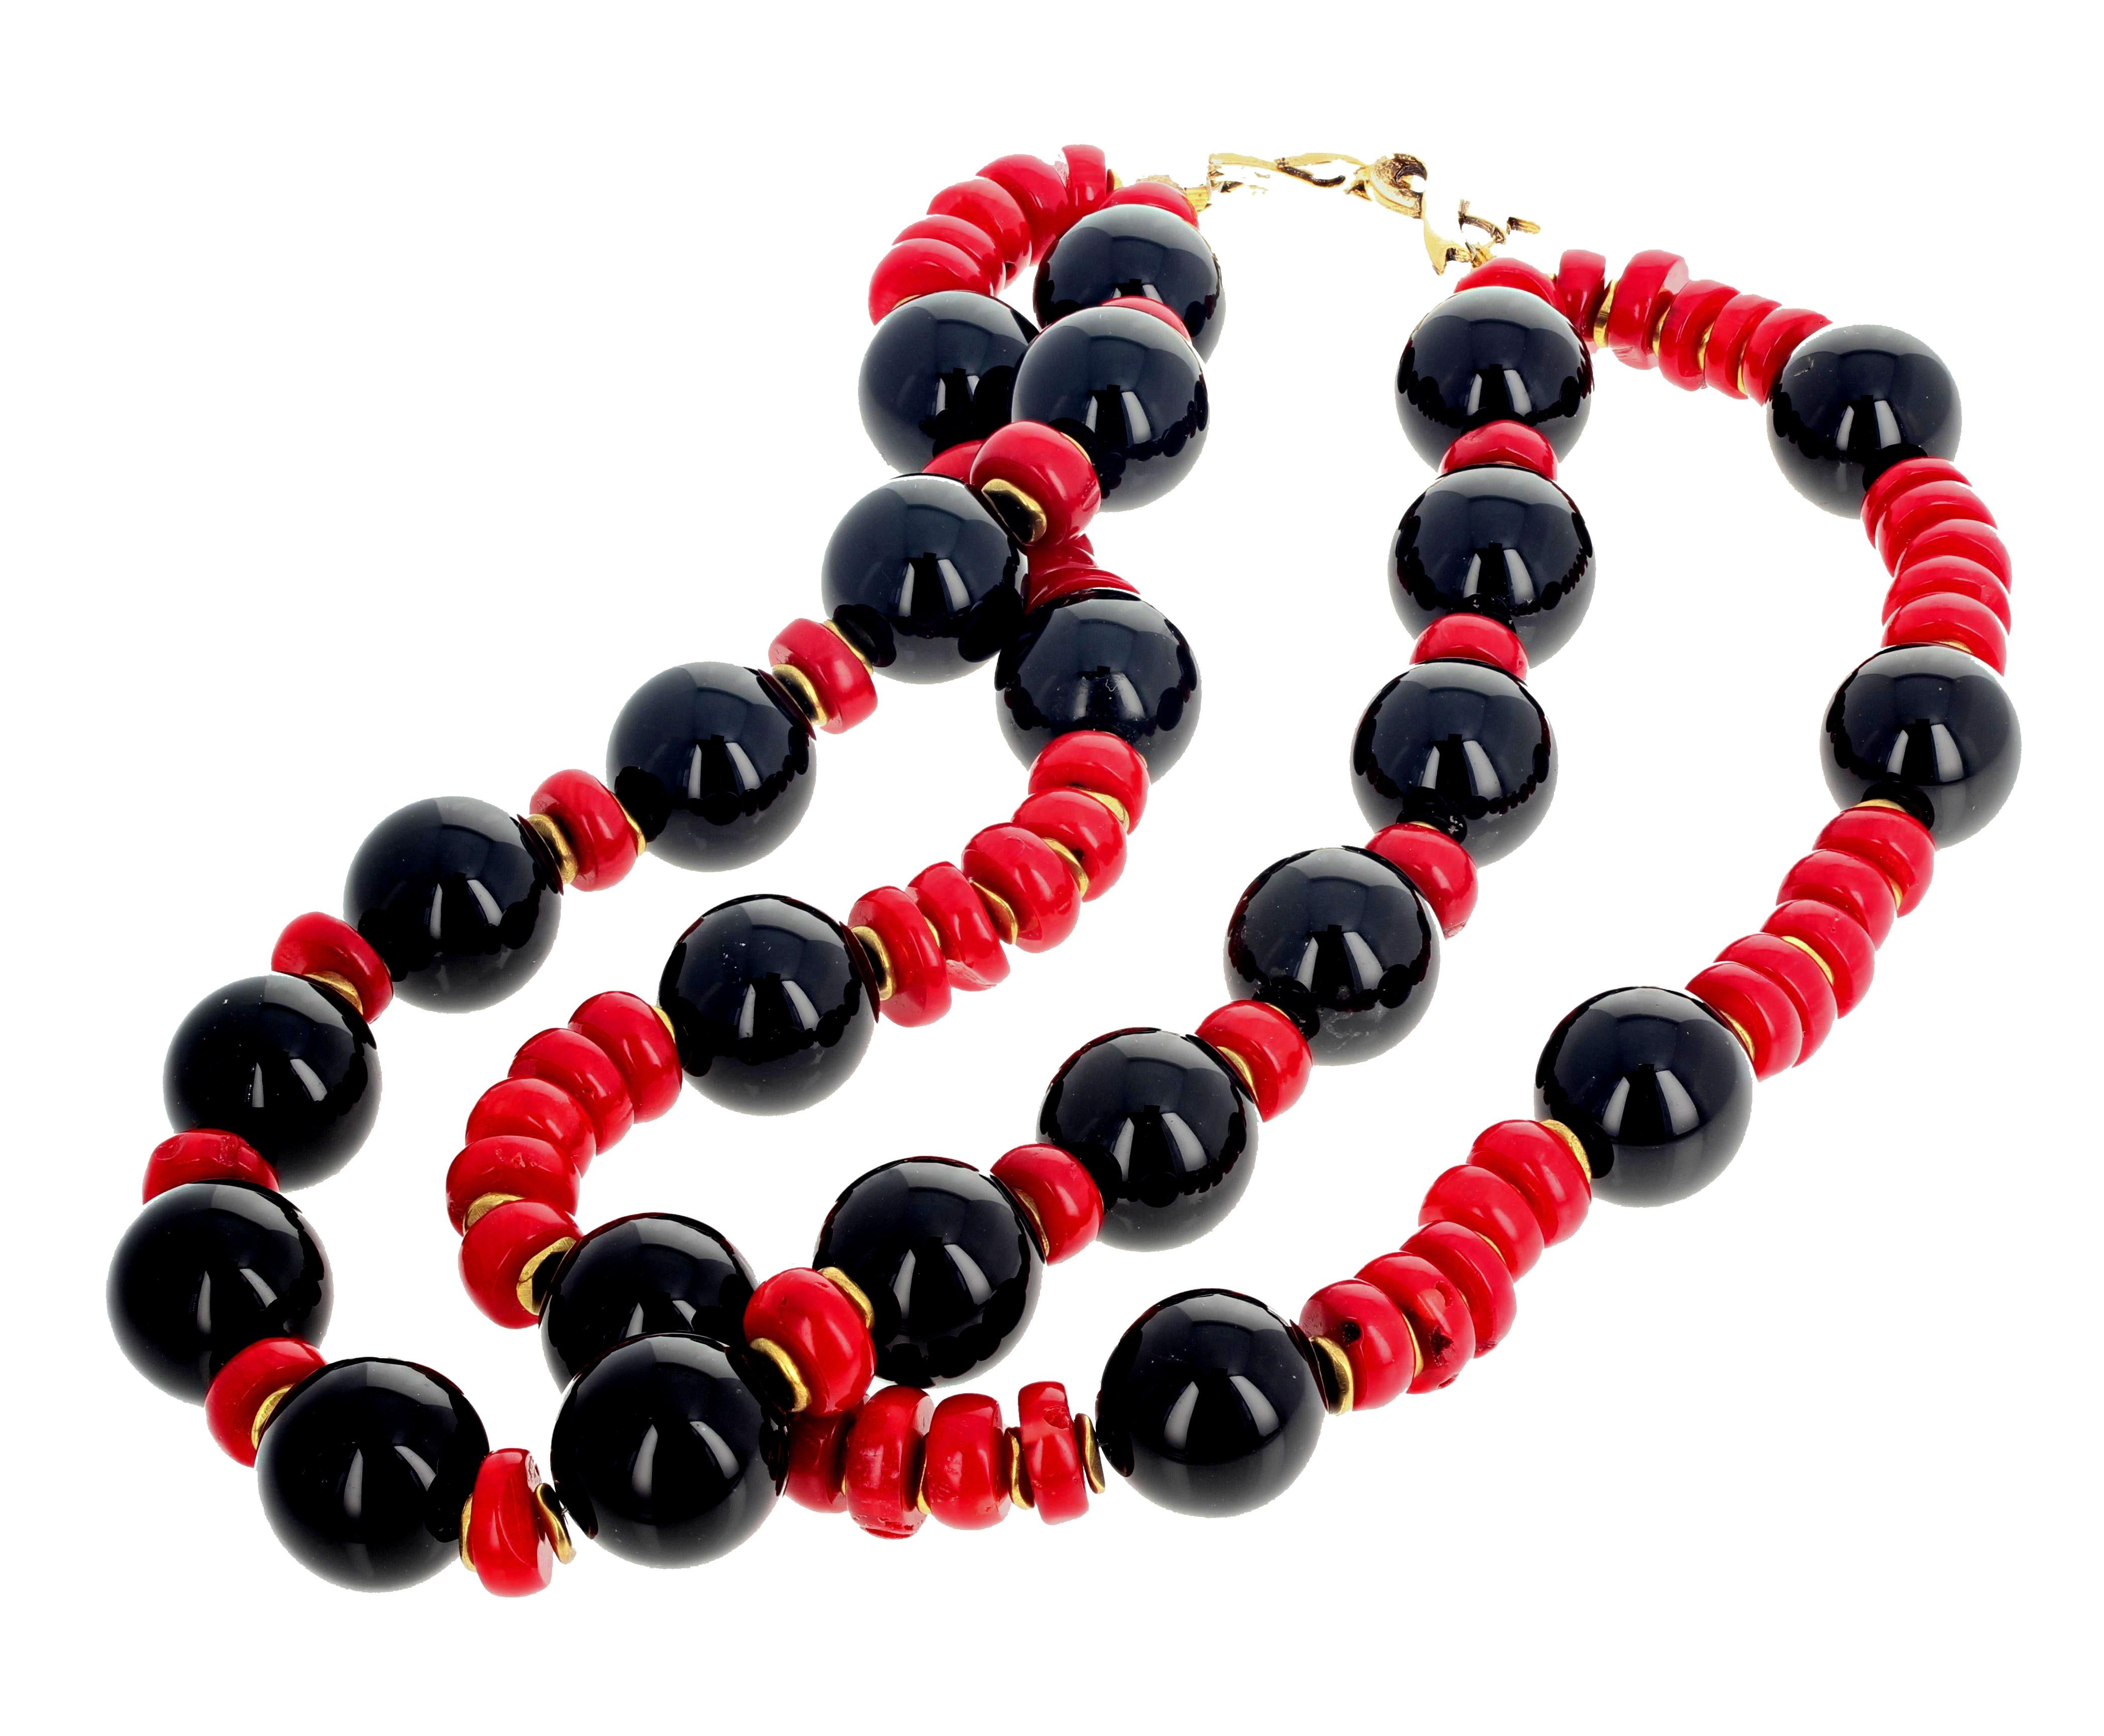 Doppelstrang aus hochglanzpoliertem, leuchtendem, natürlichem, schwarzem Onyx (18 mm), ergänzt durch Rondelle aus natürlicher, roter Bambuskoralle in dieser doppelstrangigen Halskette mit goldfarbenem, einfach zu bedienendem Hakenverschluss.  Diese